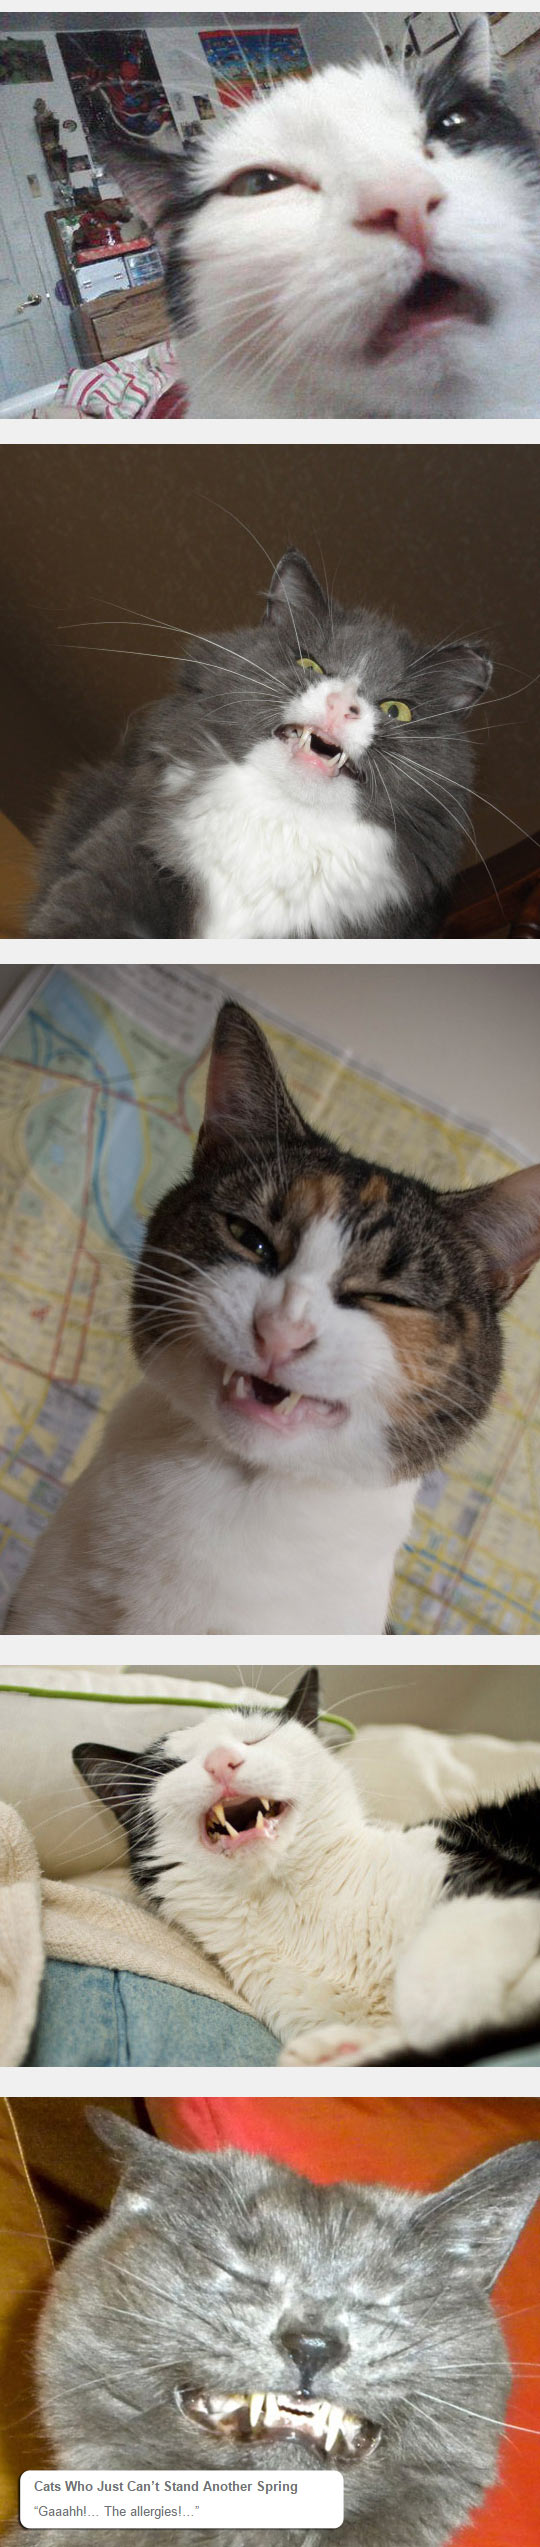 funny-cat-sneeze-face-weird-snout-eyes